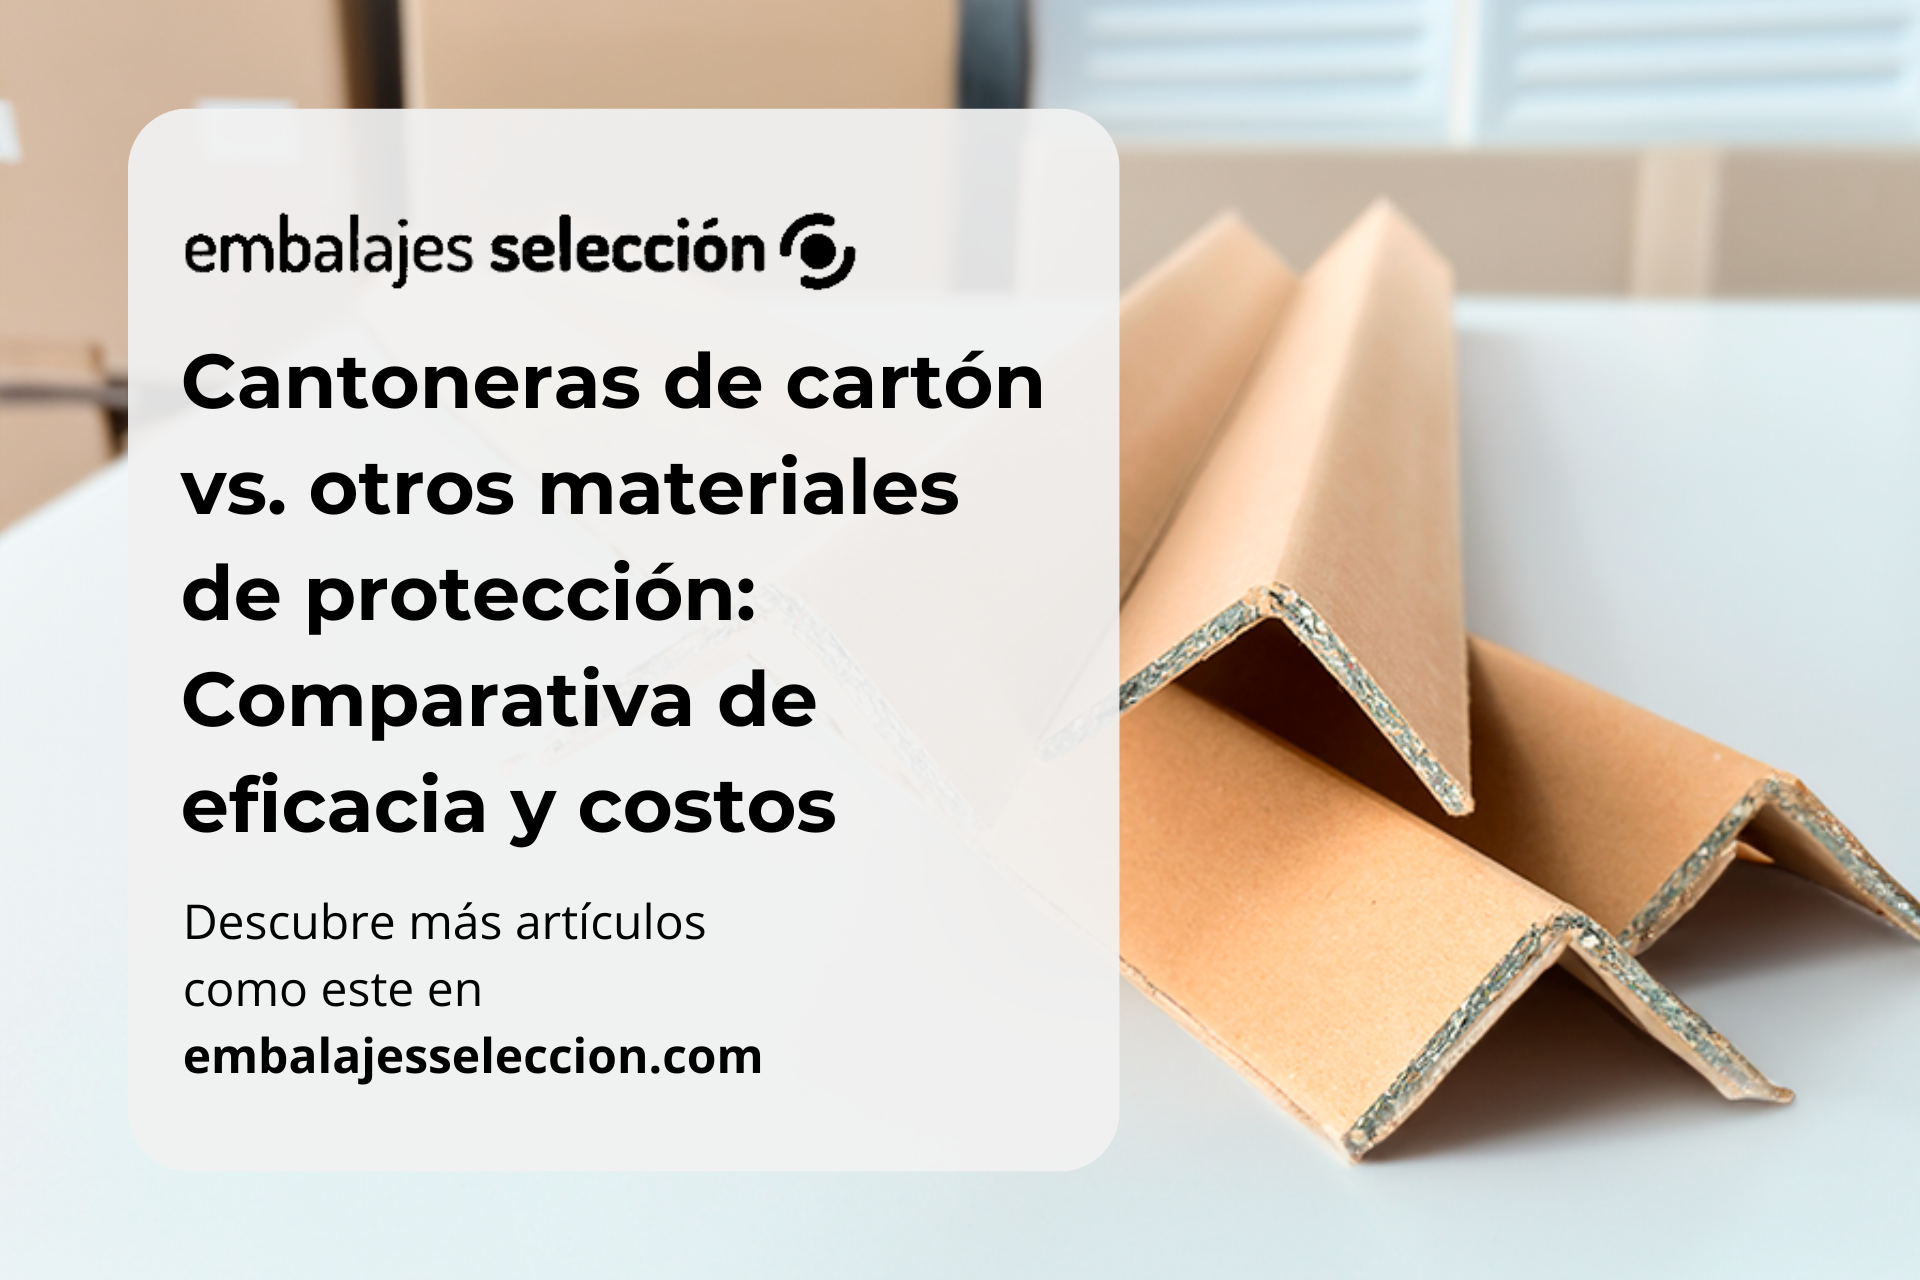 Cantoneras de cartón vs. otros materiales de protección